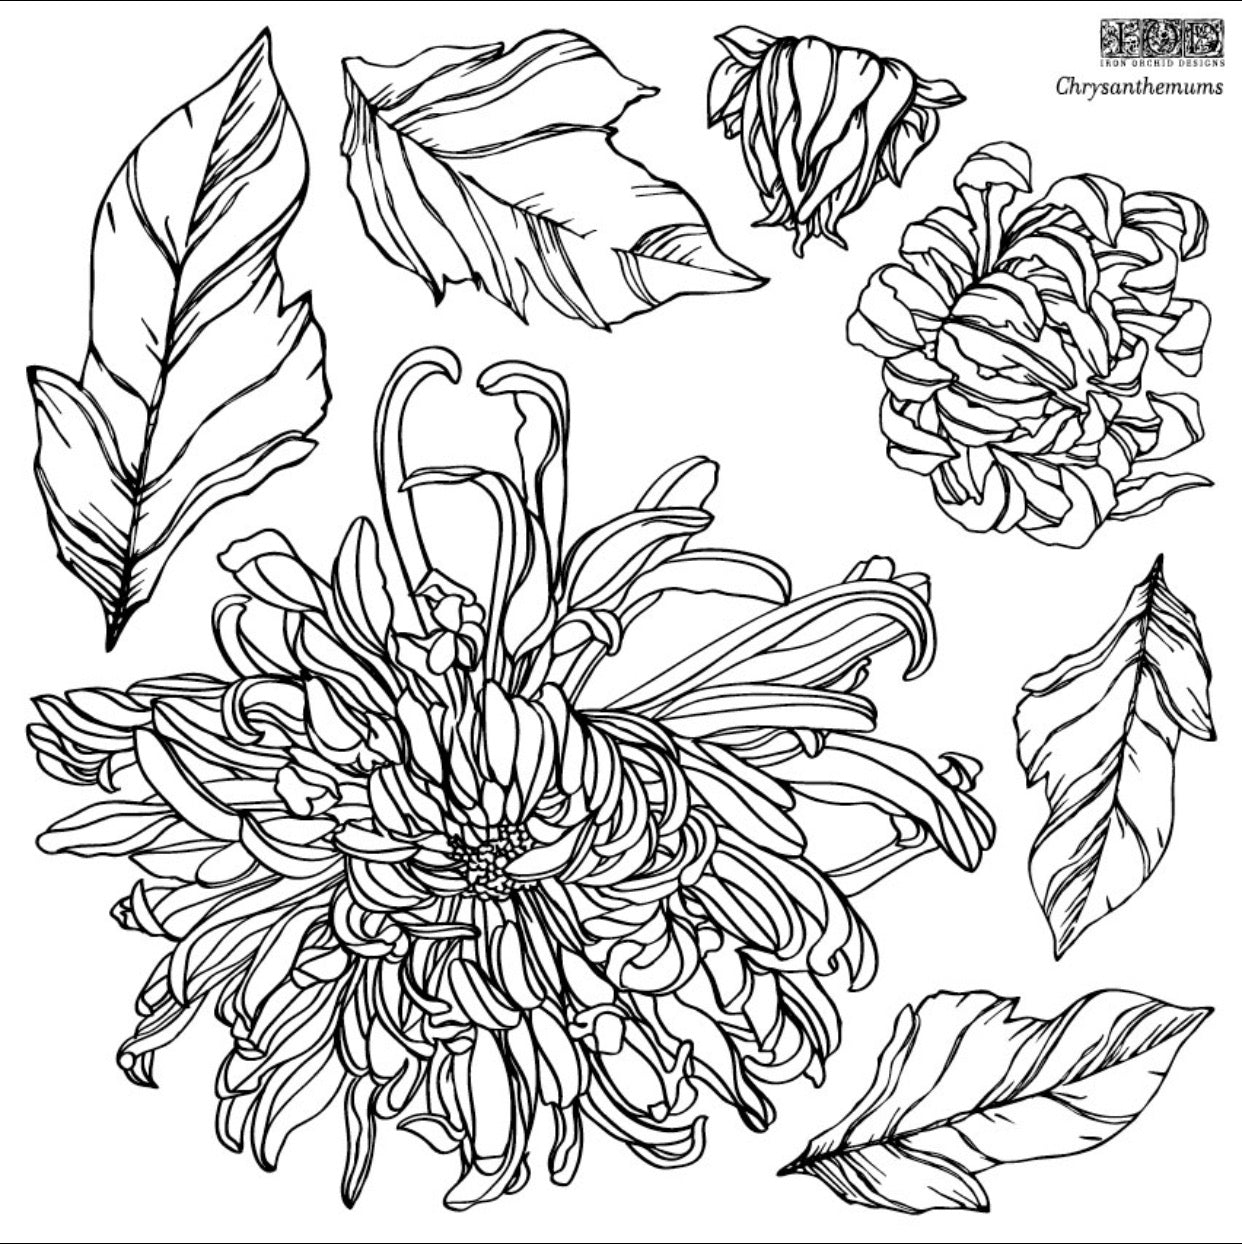 Chrysanthemum IOD Décor Stamp